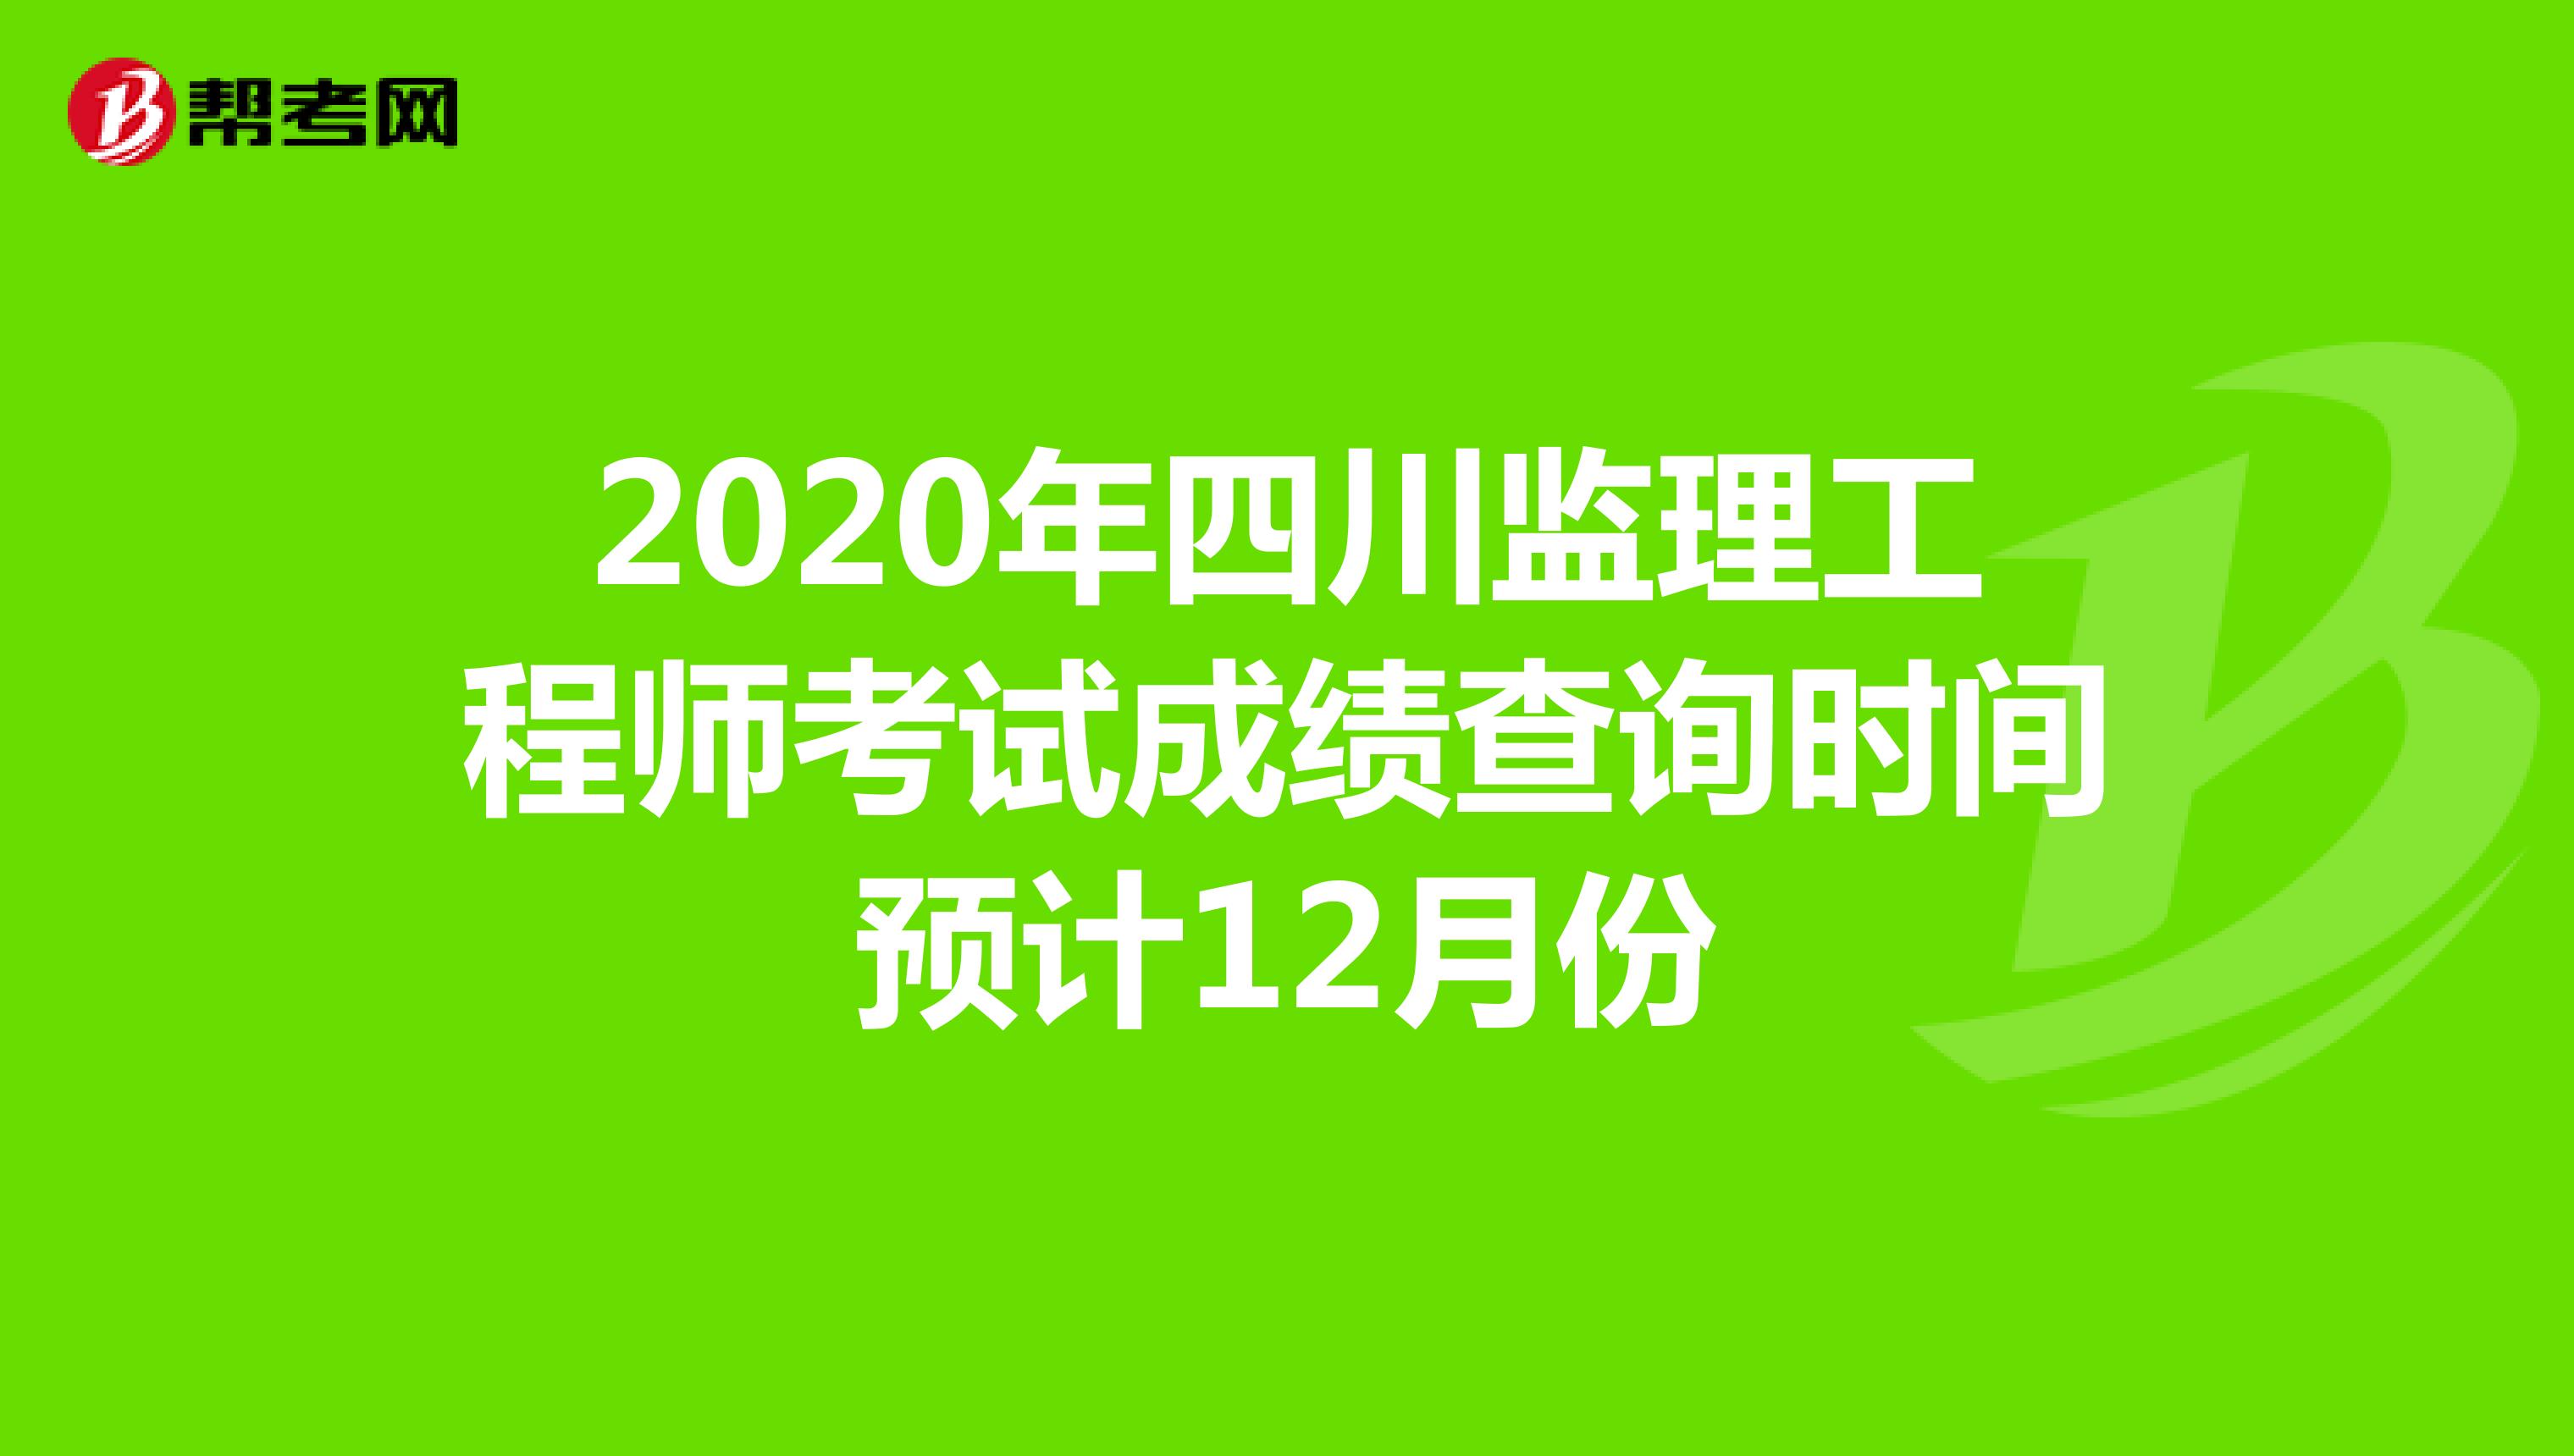 2020年四川监理工程师考试成绩查询时间预计12月份